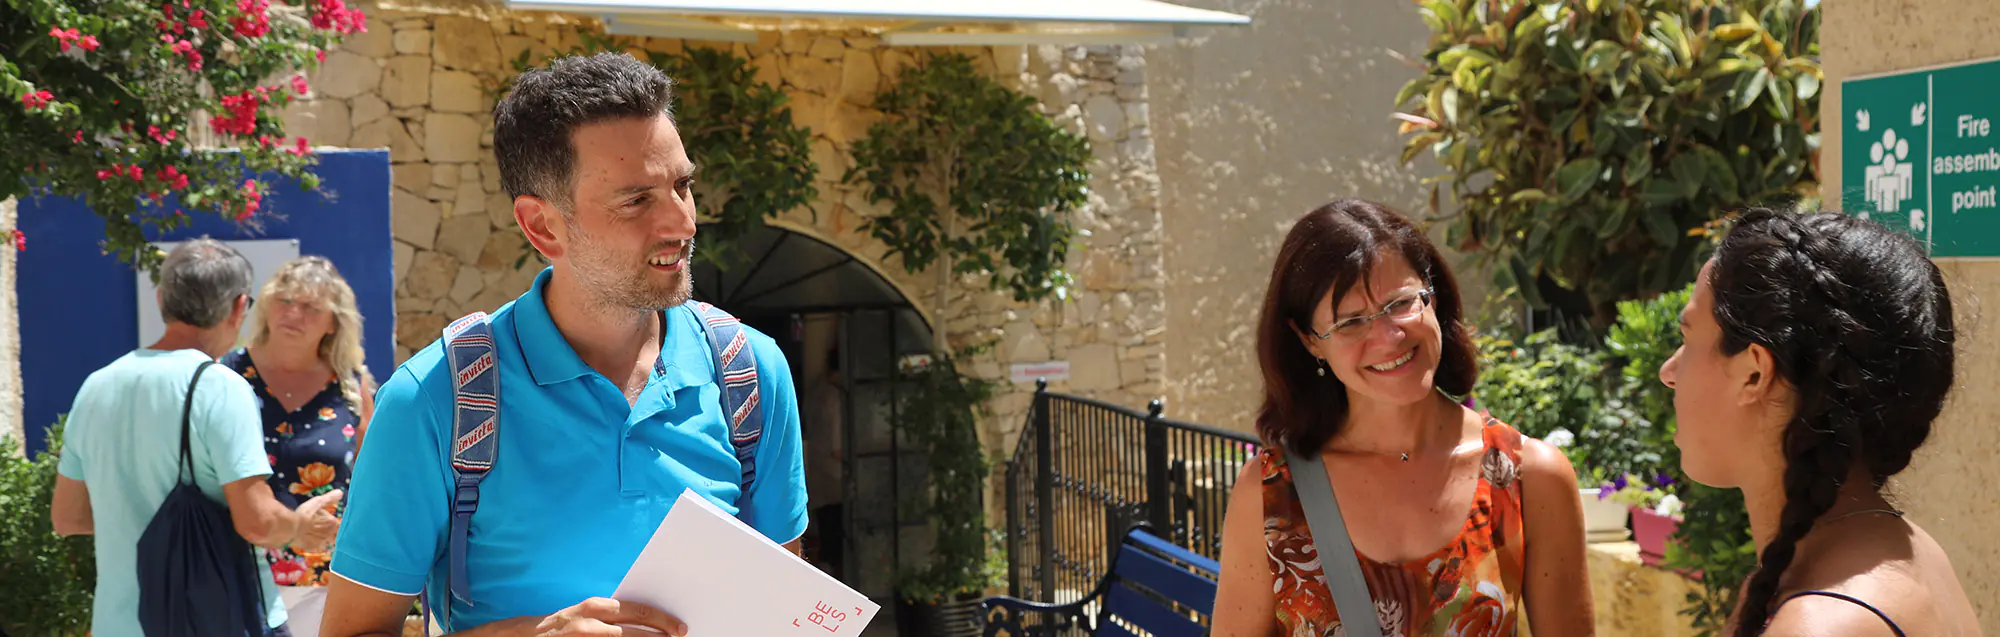 Les programmes de visa de étudier et travailler BELS Gozo